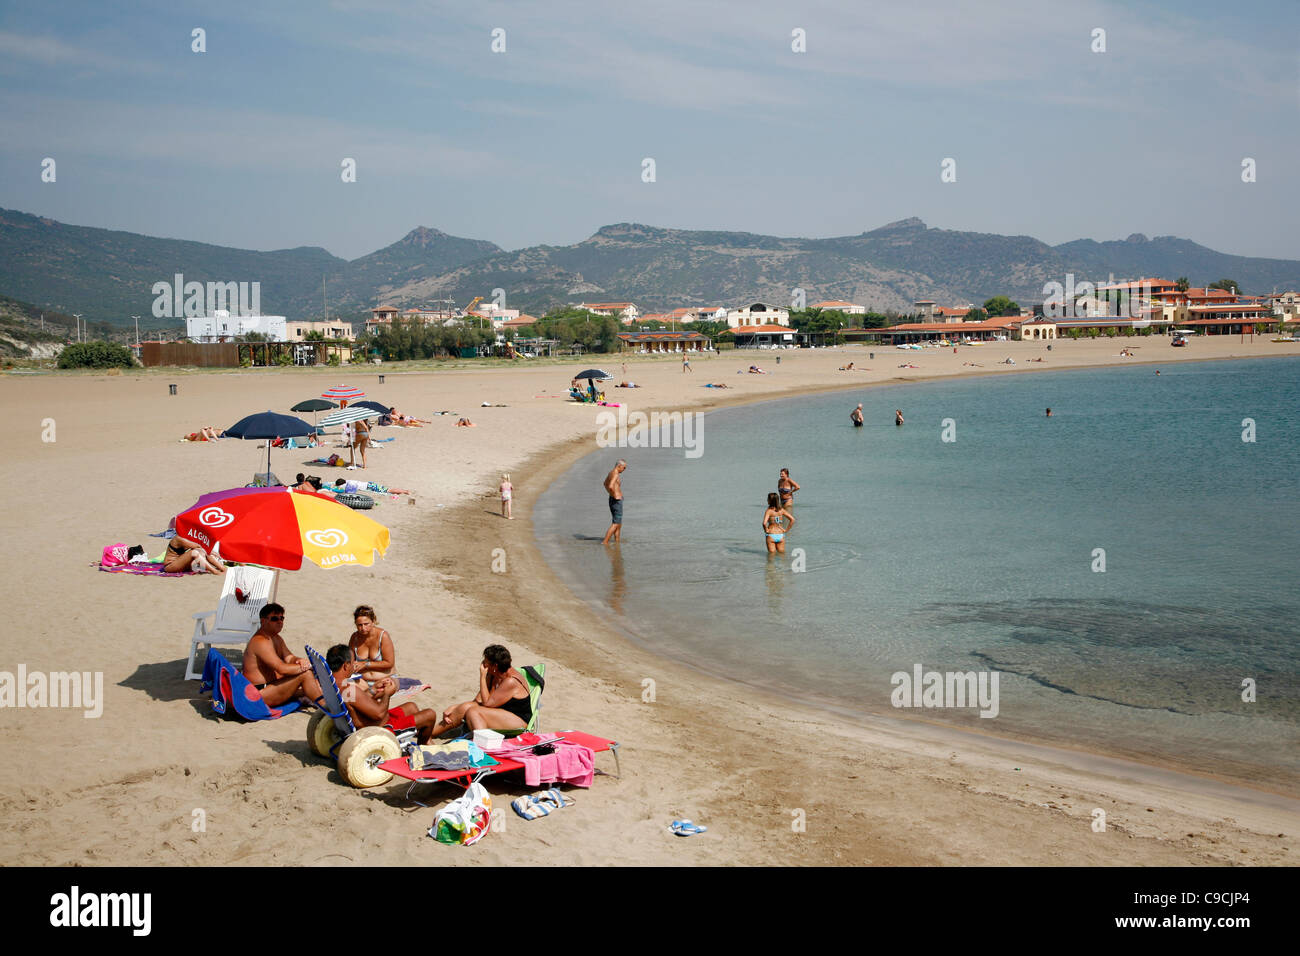 The beach in Bosa Marina, Sardinia, Italy. Stock Photo